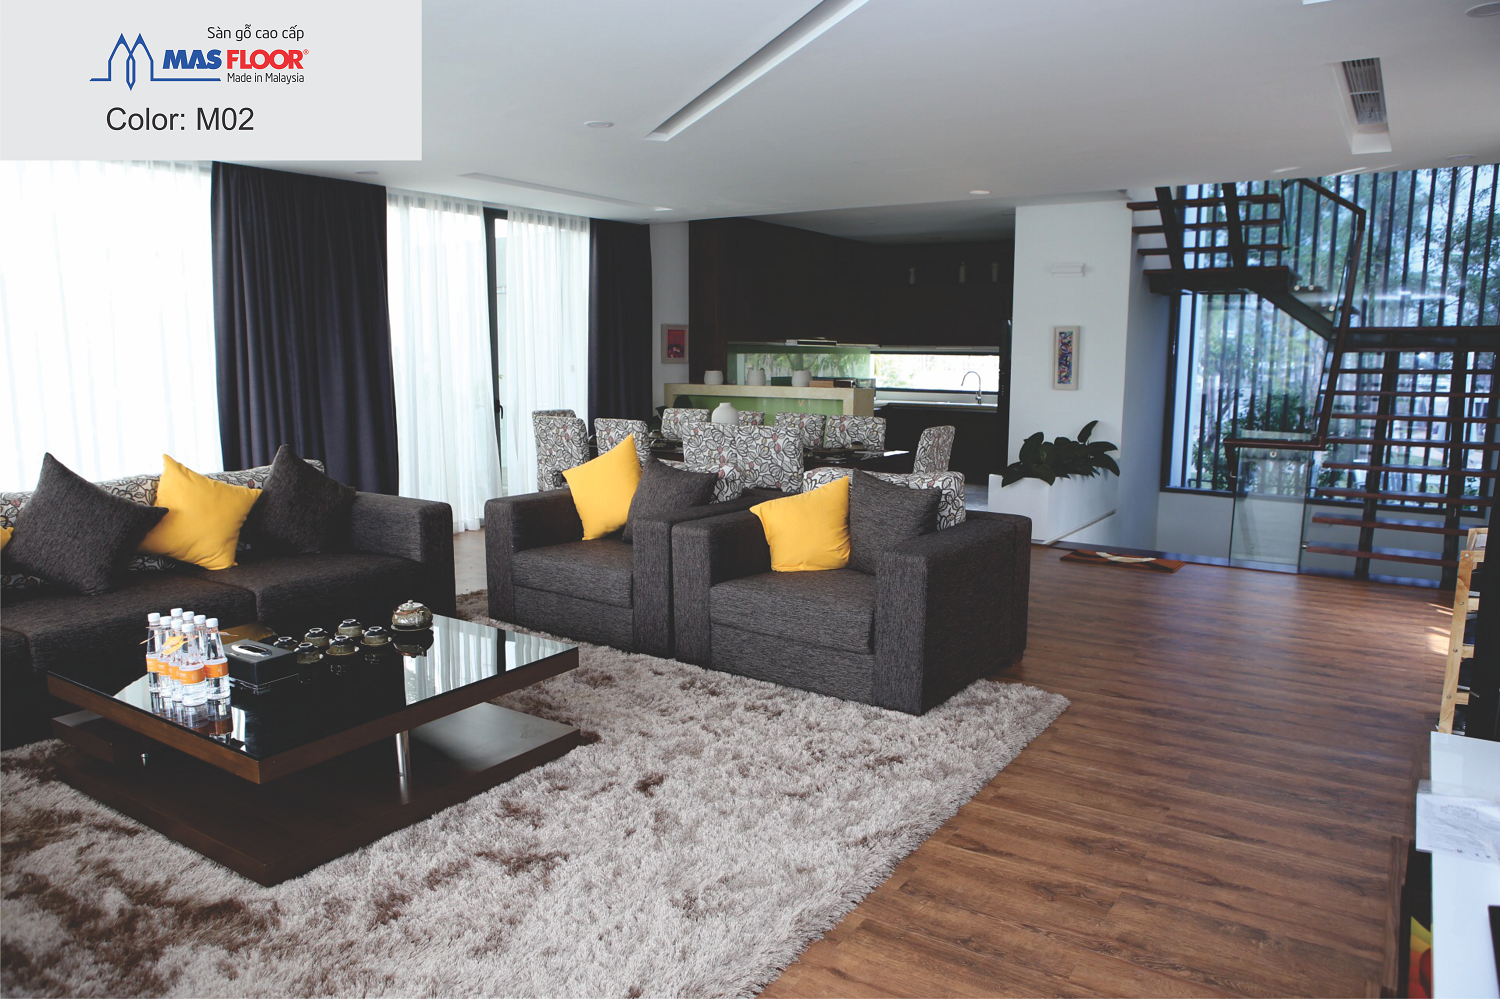 Sàn gỗ công nghiệp Masfloor thích hợp với nhiều không gian nội thất khác nhau